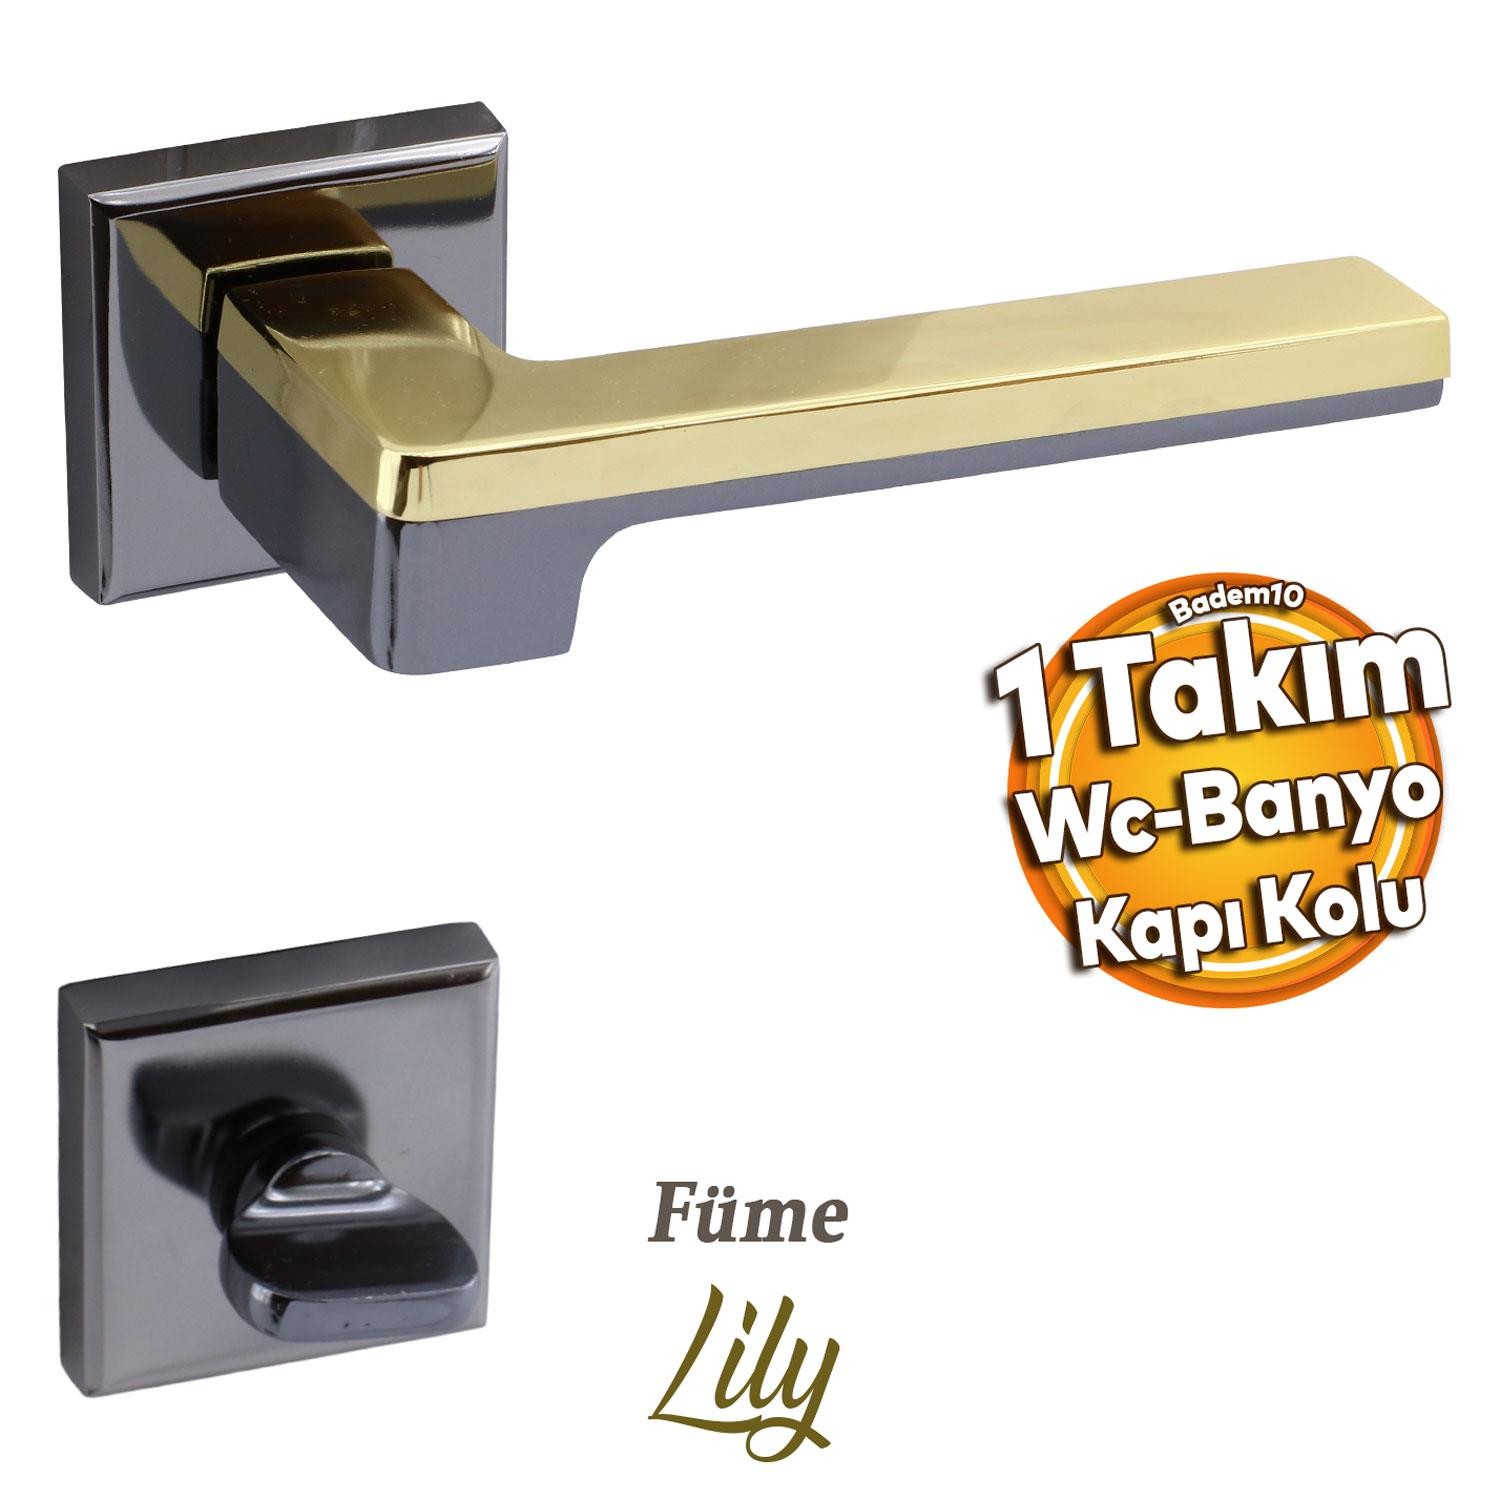 Defne Lüx Füme Gold Kare Rozetli Wc-Banyo Kapısı Uyumlu Kapı Kolu Sağa ve Sola Uygun Kolları 1 Takım